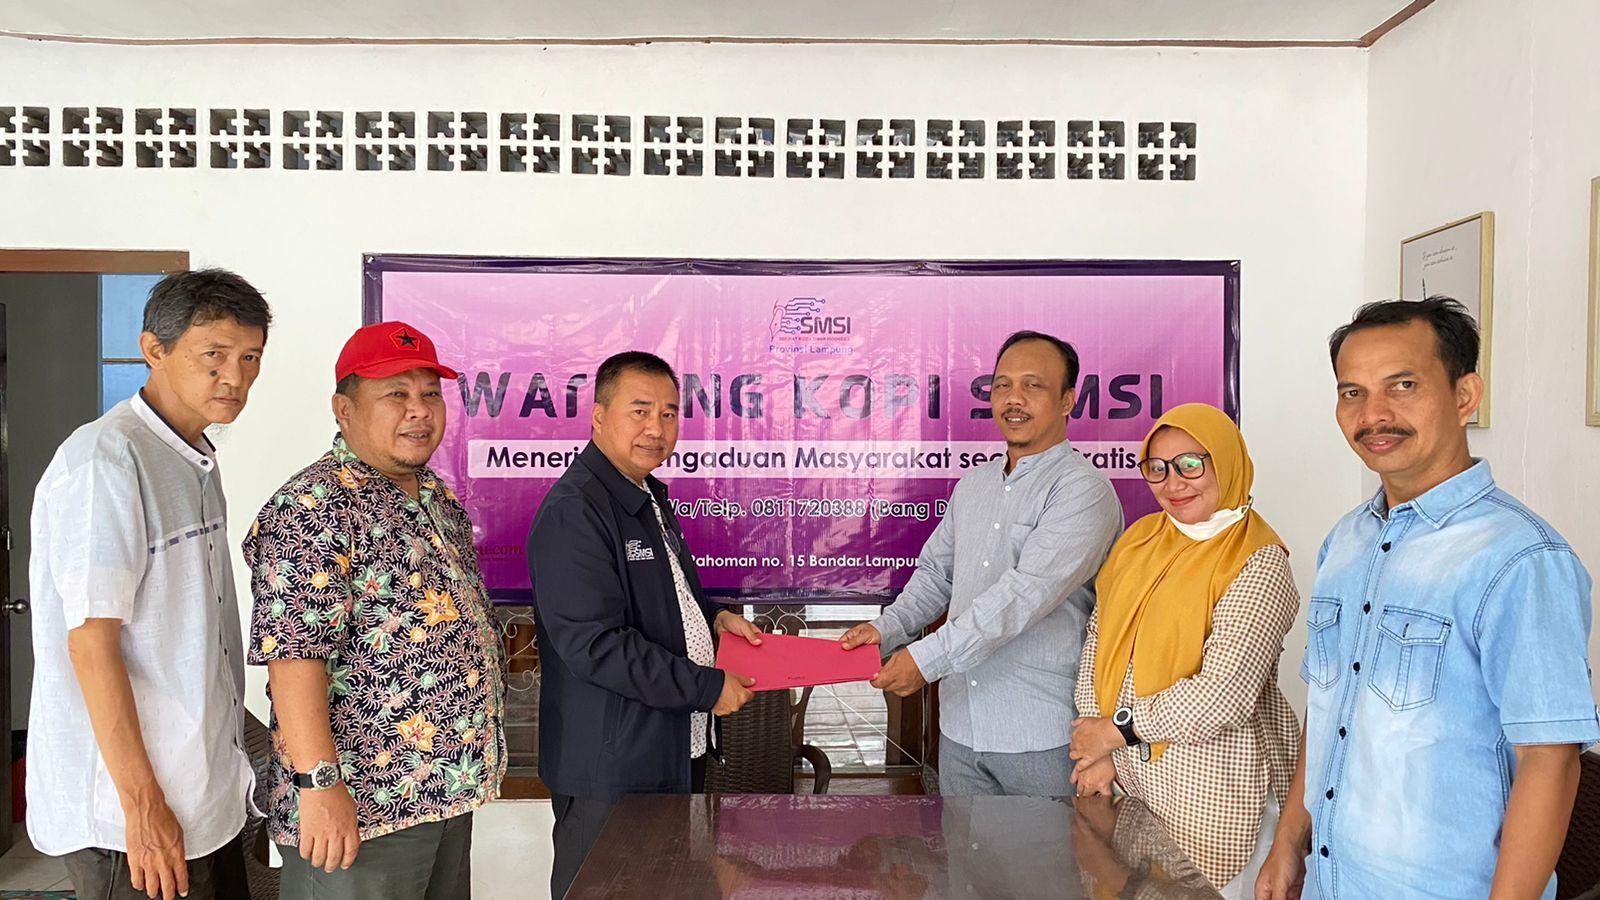 Donny Irawan Resmi Daftar Sebagai Ketua SMSI Lampung Periode 2022-2027